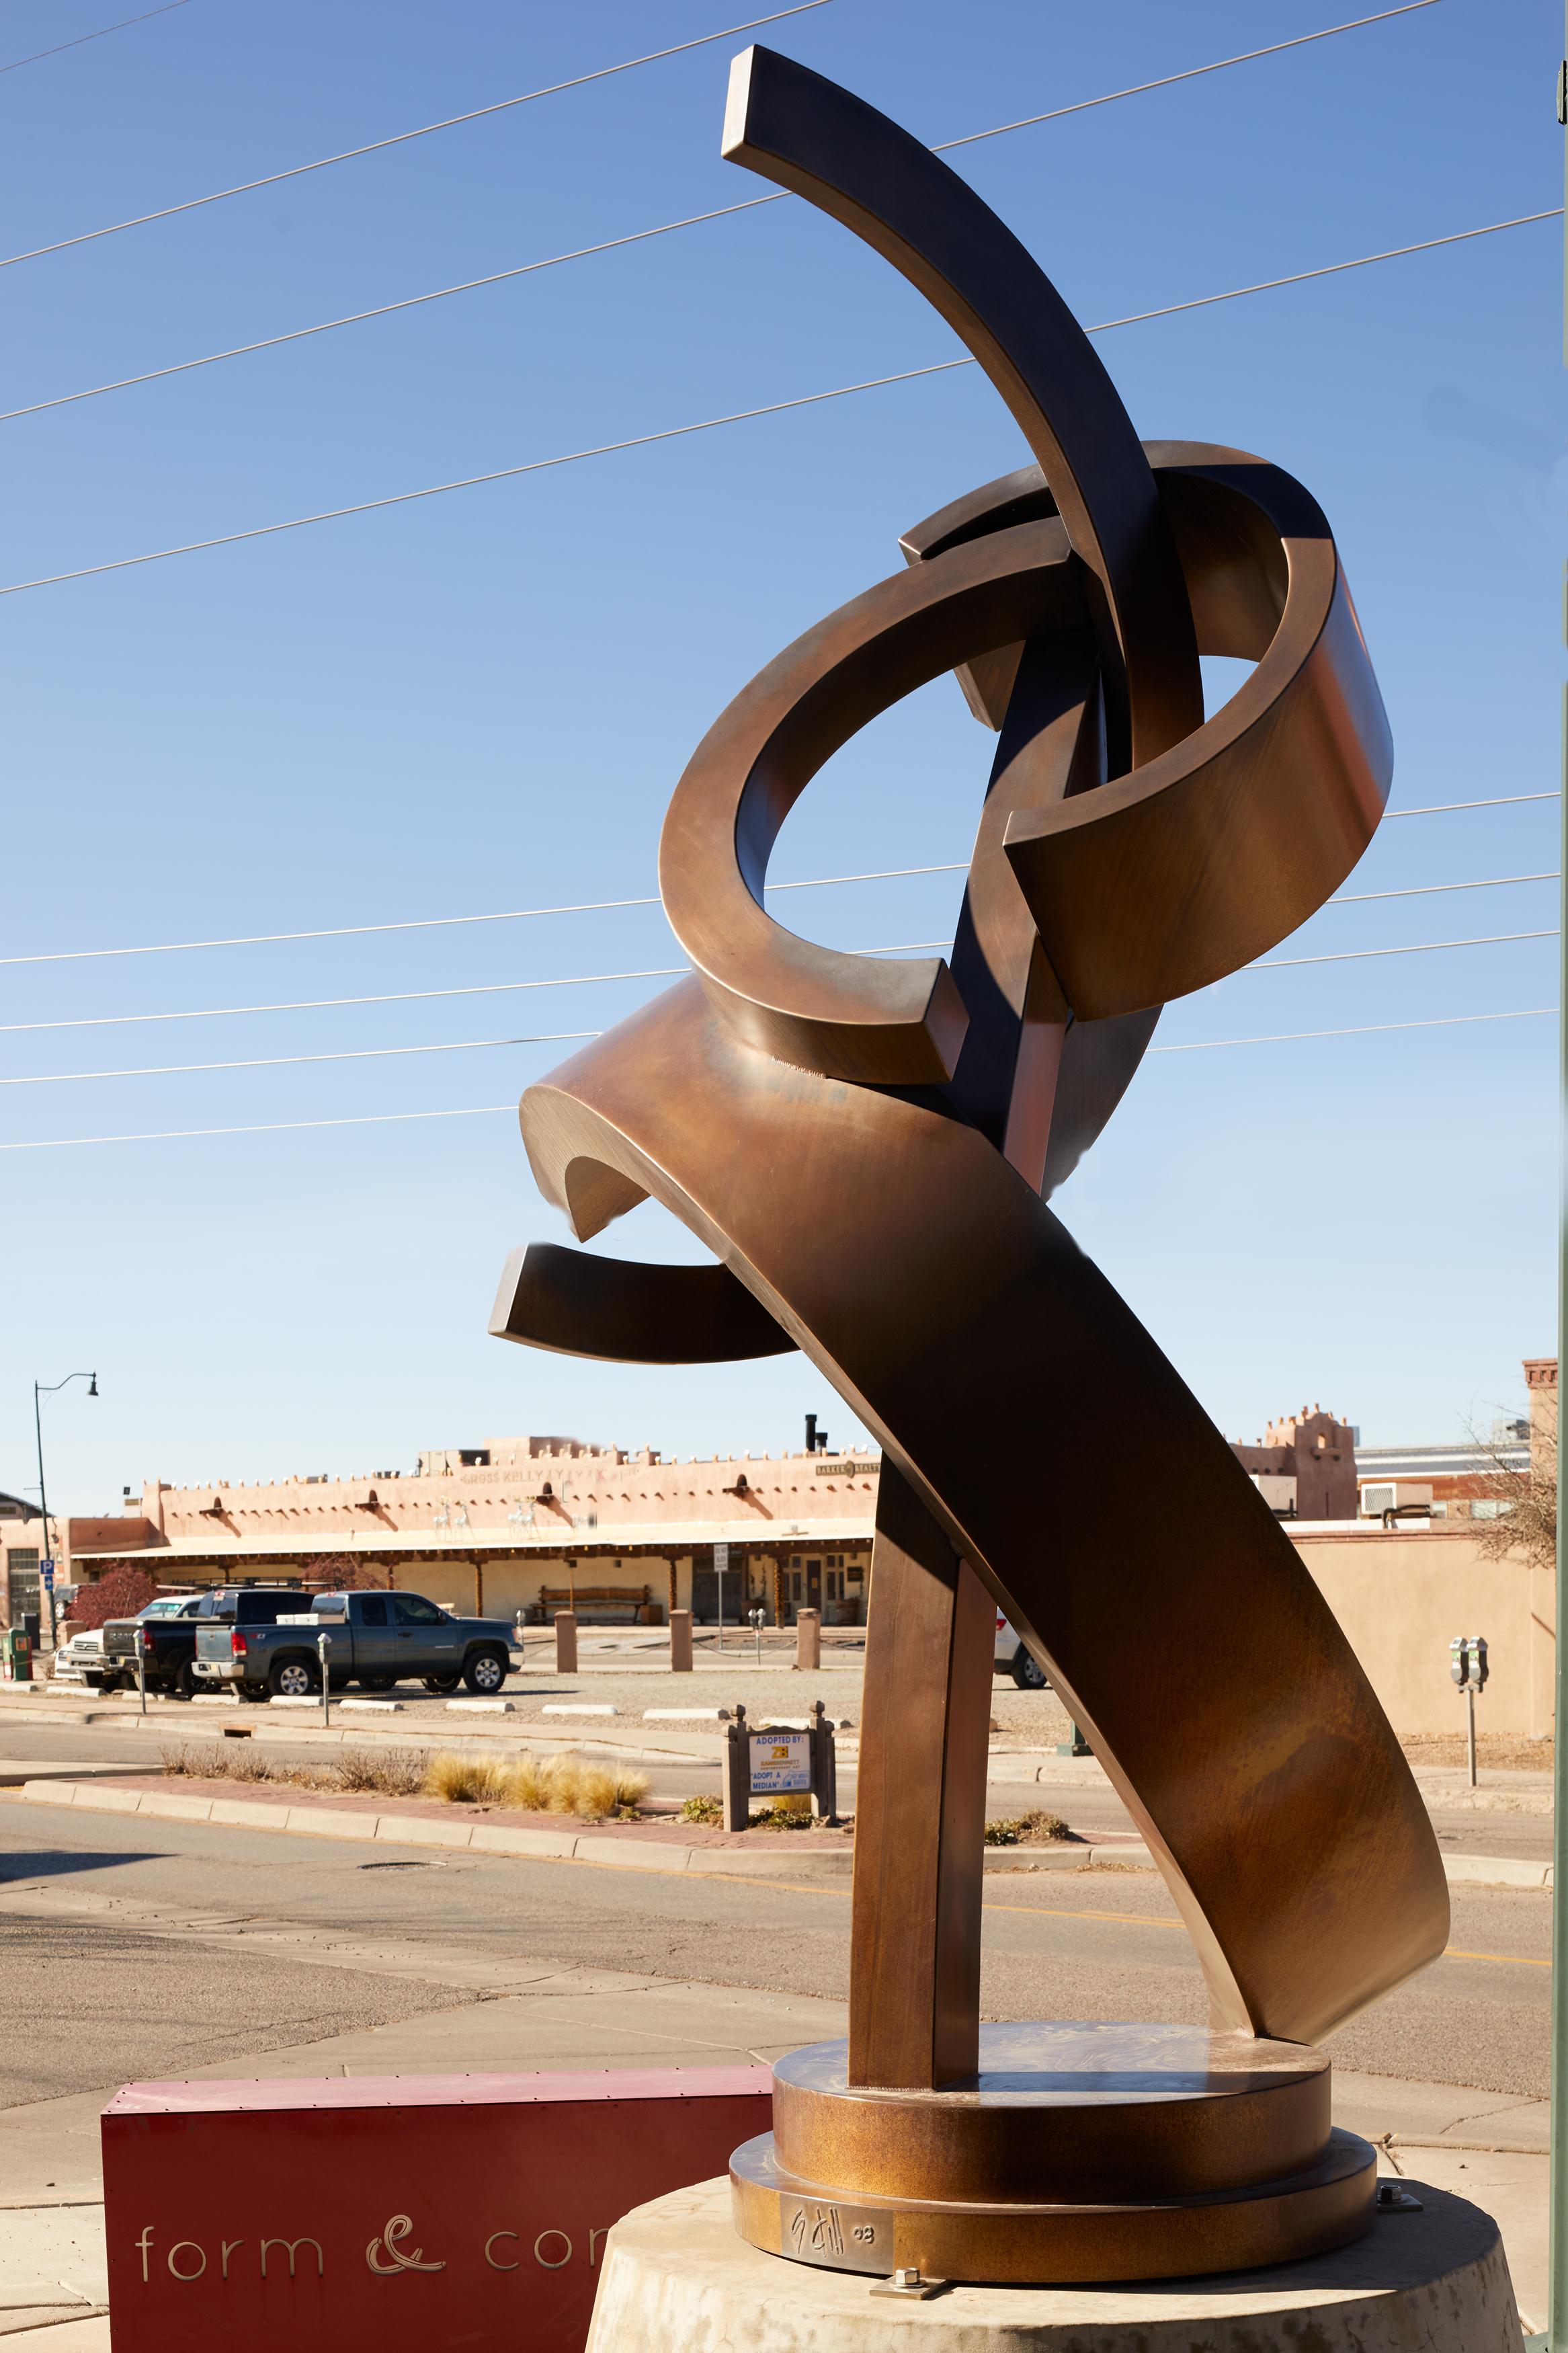 Boon est une sculpture en bronze réalisée en 2008 par Guy Dill. Le raffinement et l'élégance des œuvres en bronze de Guy Dill s'équilibrent sans peine avec l'aspect industriel et moderne de la sculpture en métal. Boon est signé par Guy Dill. 